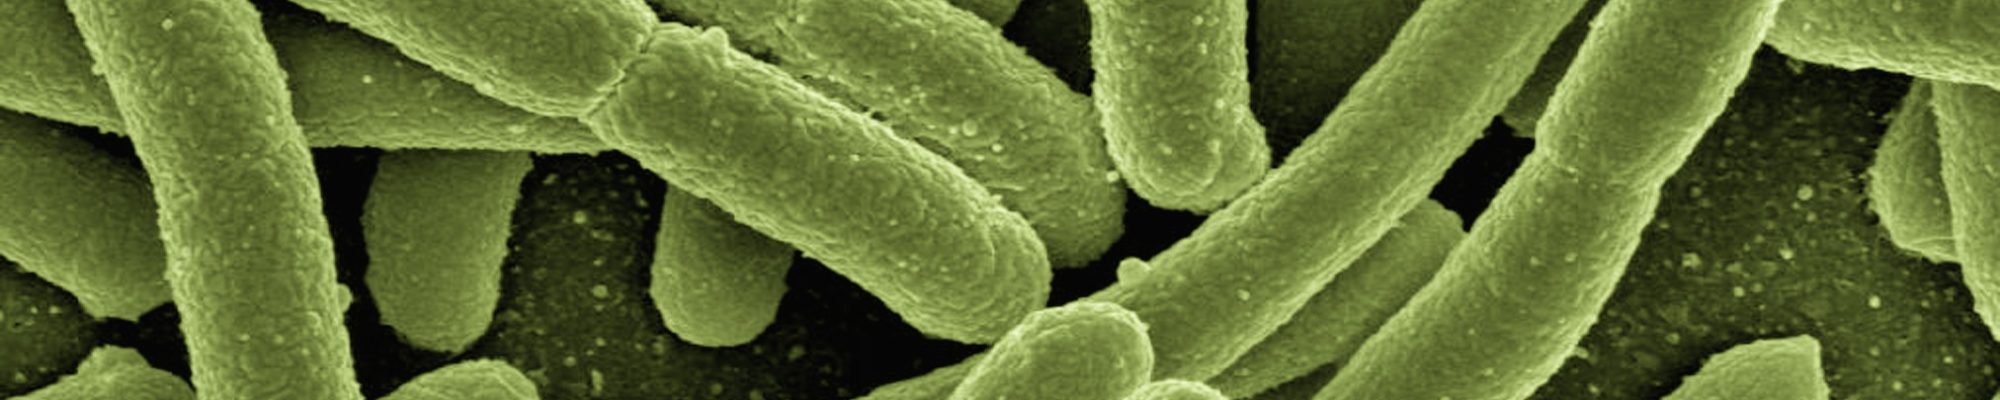 Gerd-Altmann-E.-coli